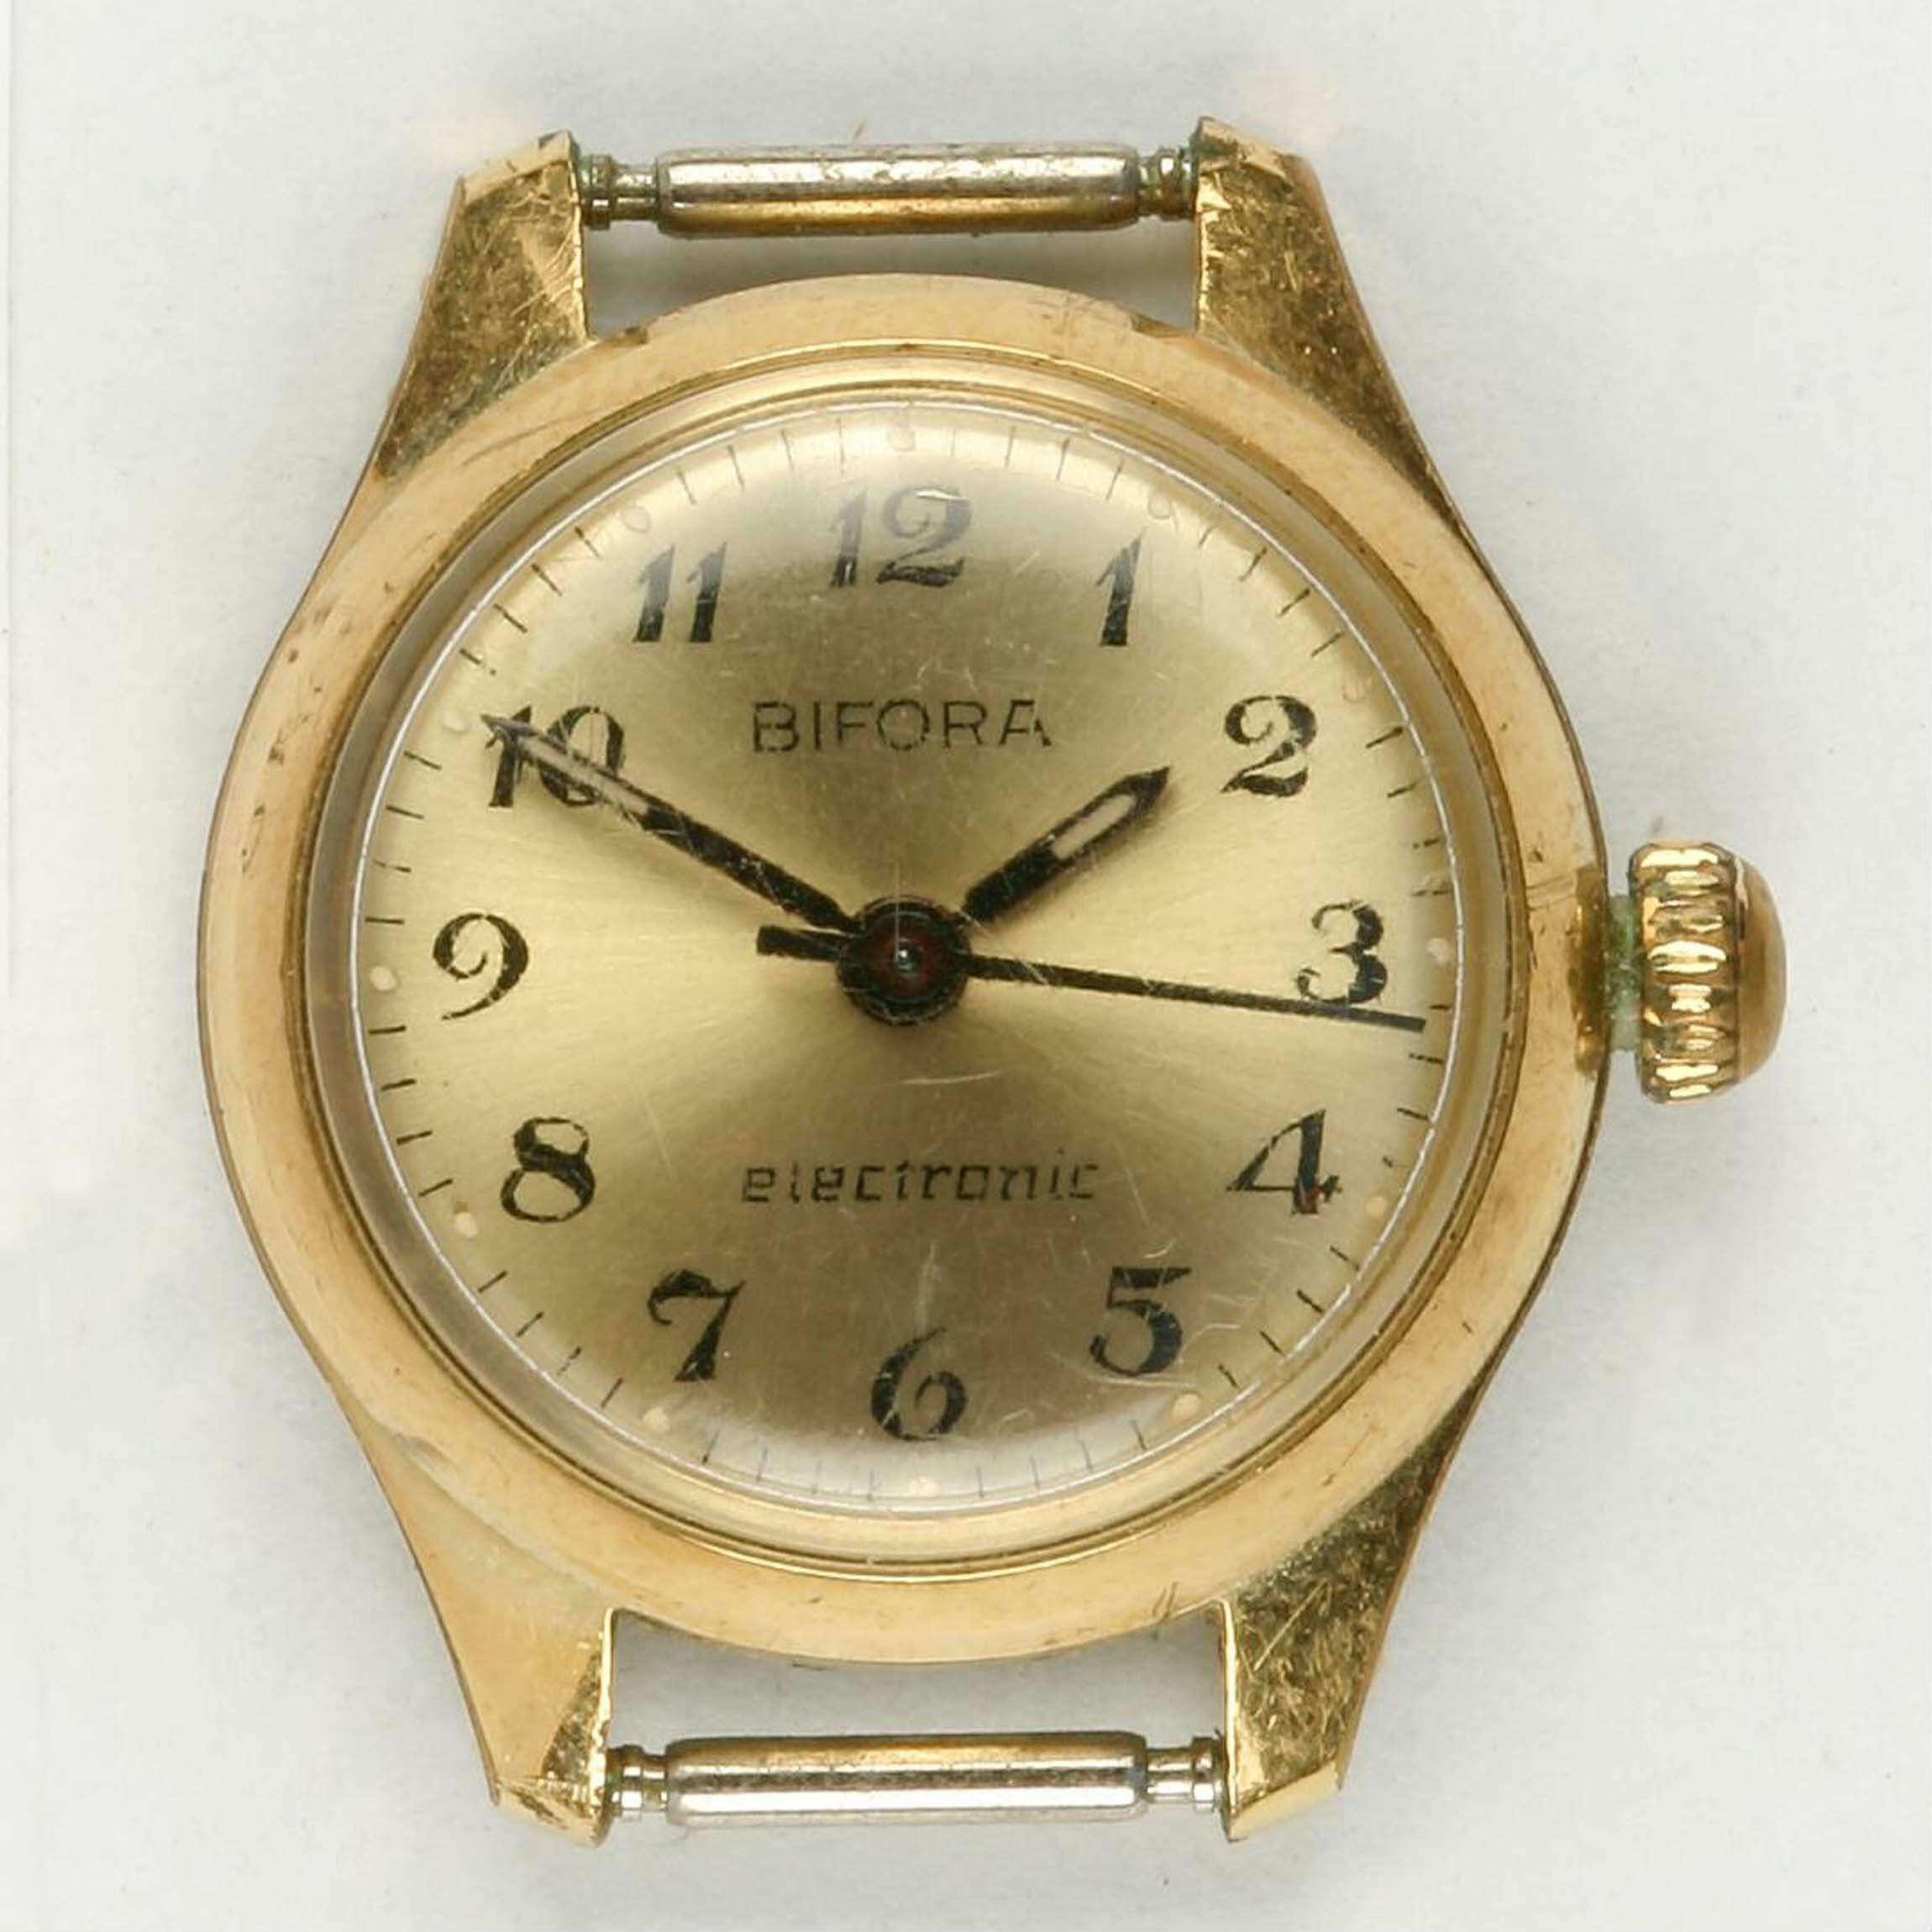 Armbanduhr, Bifora, Schwäbisch Gmünd, um 1971. (Deutsches Uhrenmuseum CC BY-SA)